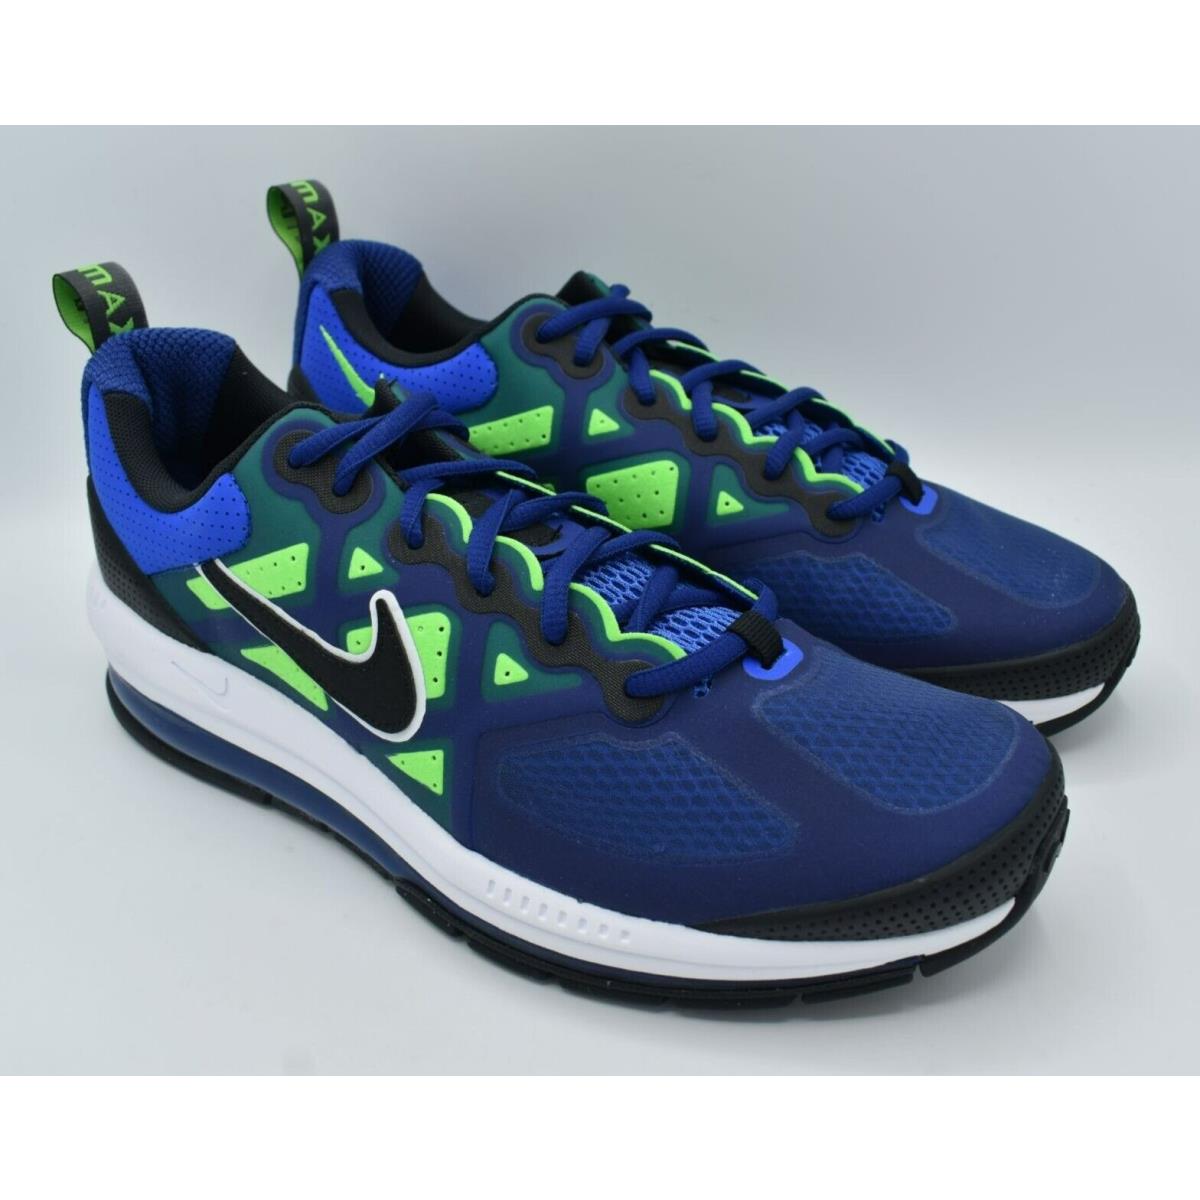 Nike shoes Air Max Genome - Deep Royal Blue / Black 3